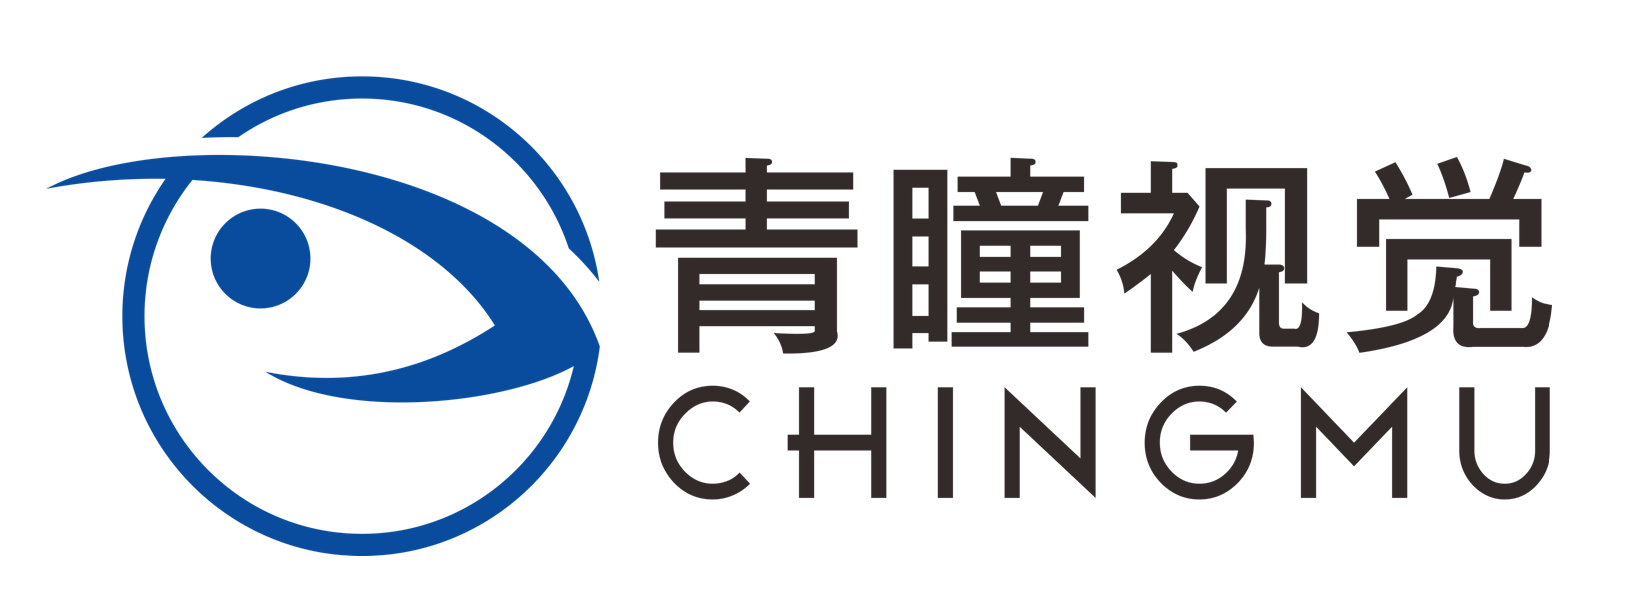 上海青瞳視覺科技有限公司